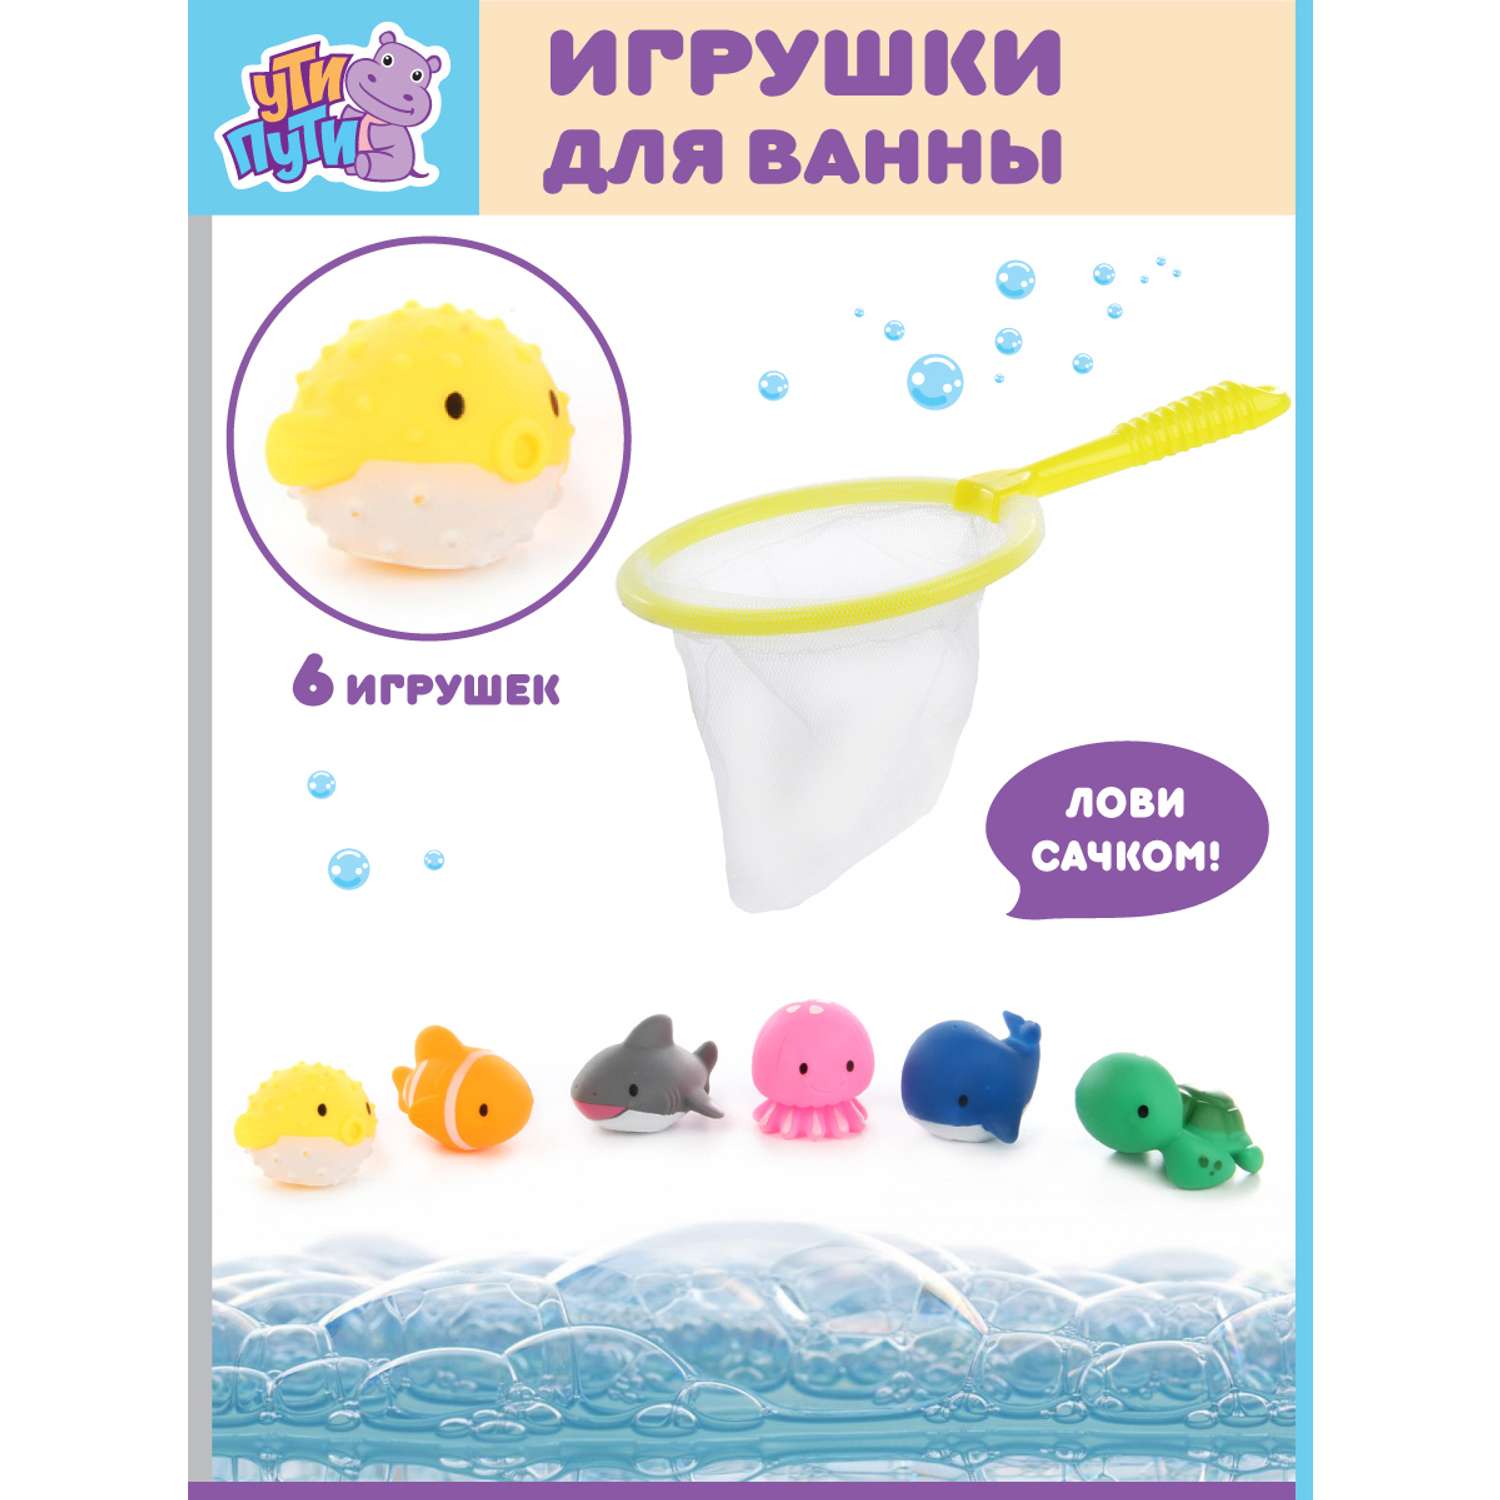 Игрушки для ванны Ути Пути Водный мир 6 игрушек + сачок - фото 2